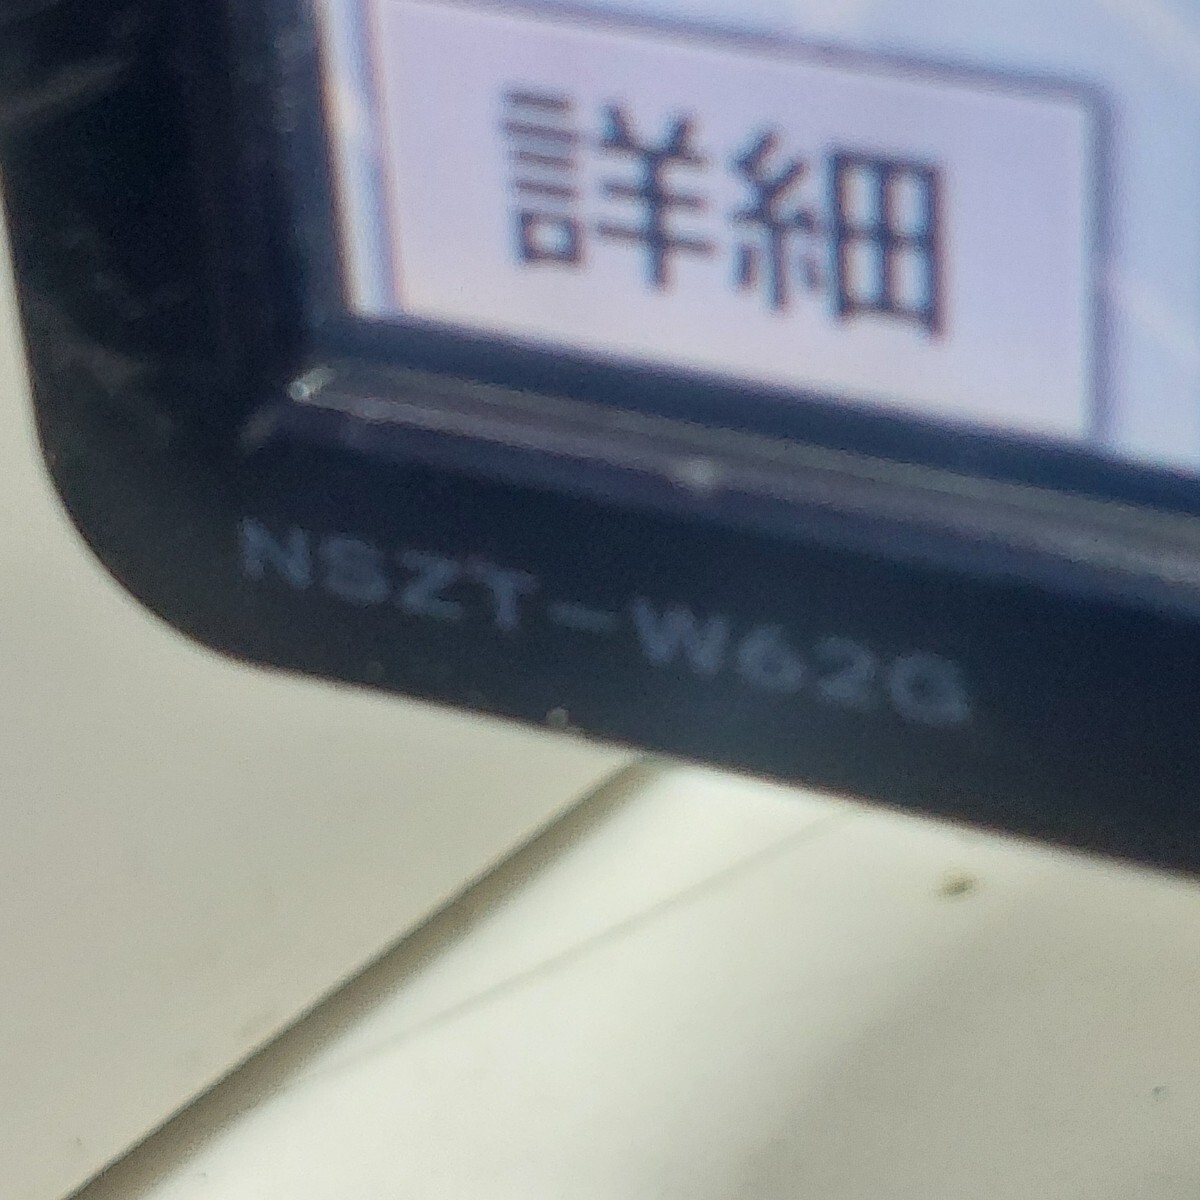  Toyota NSZT-W62G 2016 отчетный год карта данные ( контрольный номер : 23051209 )